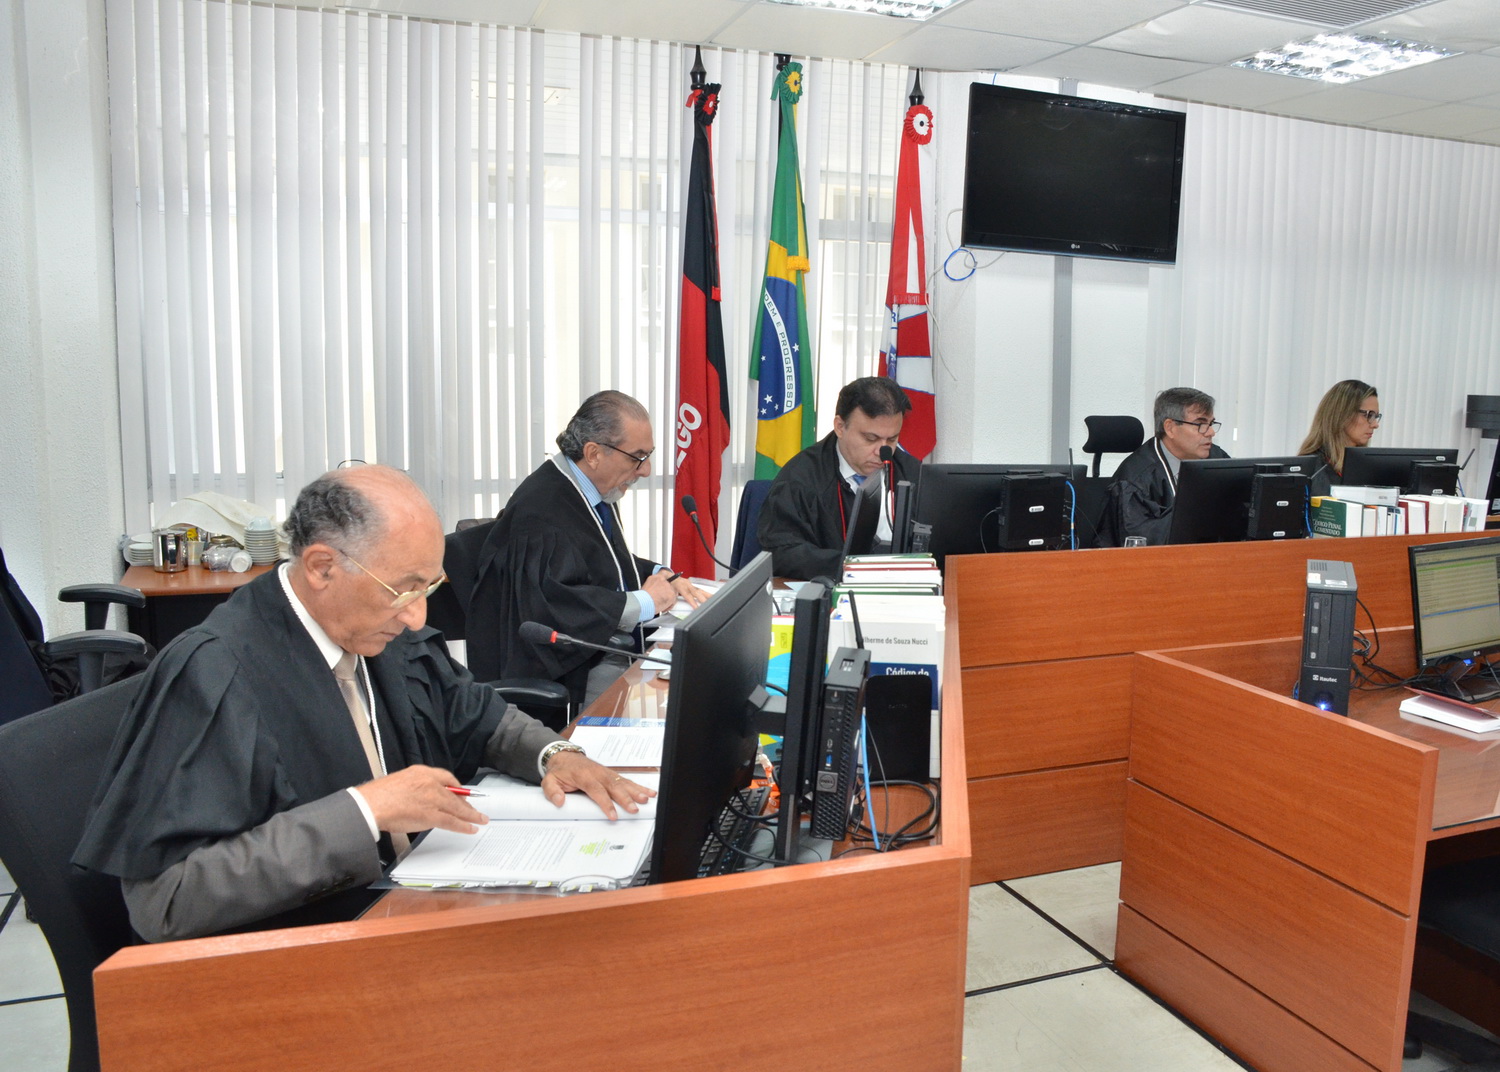 Câmara Criminal do TJ-PB decide que Ação Penal contra ex-procurador Gilberto Carneiro será julgada pela Justiça Comum